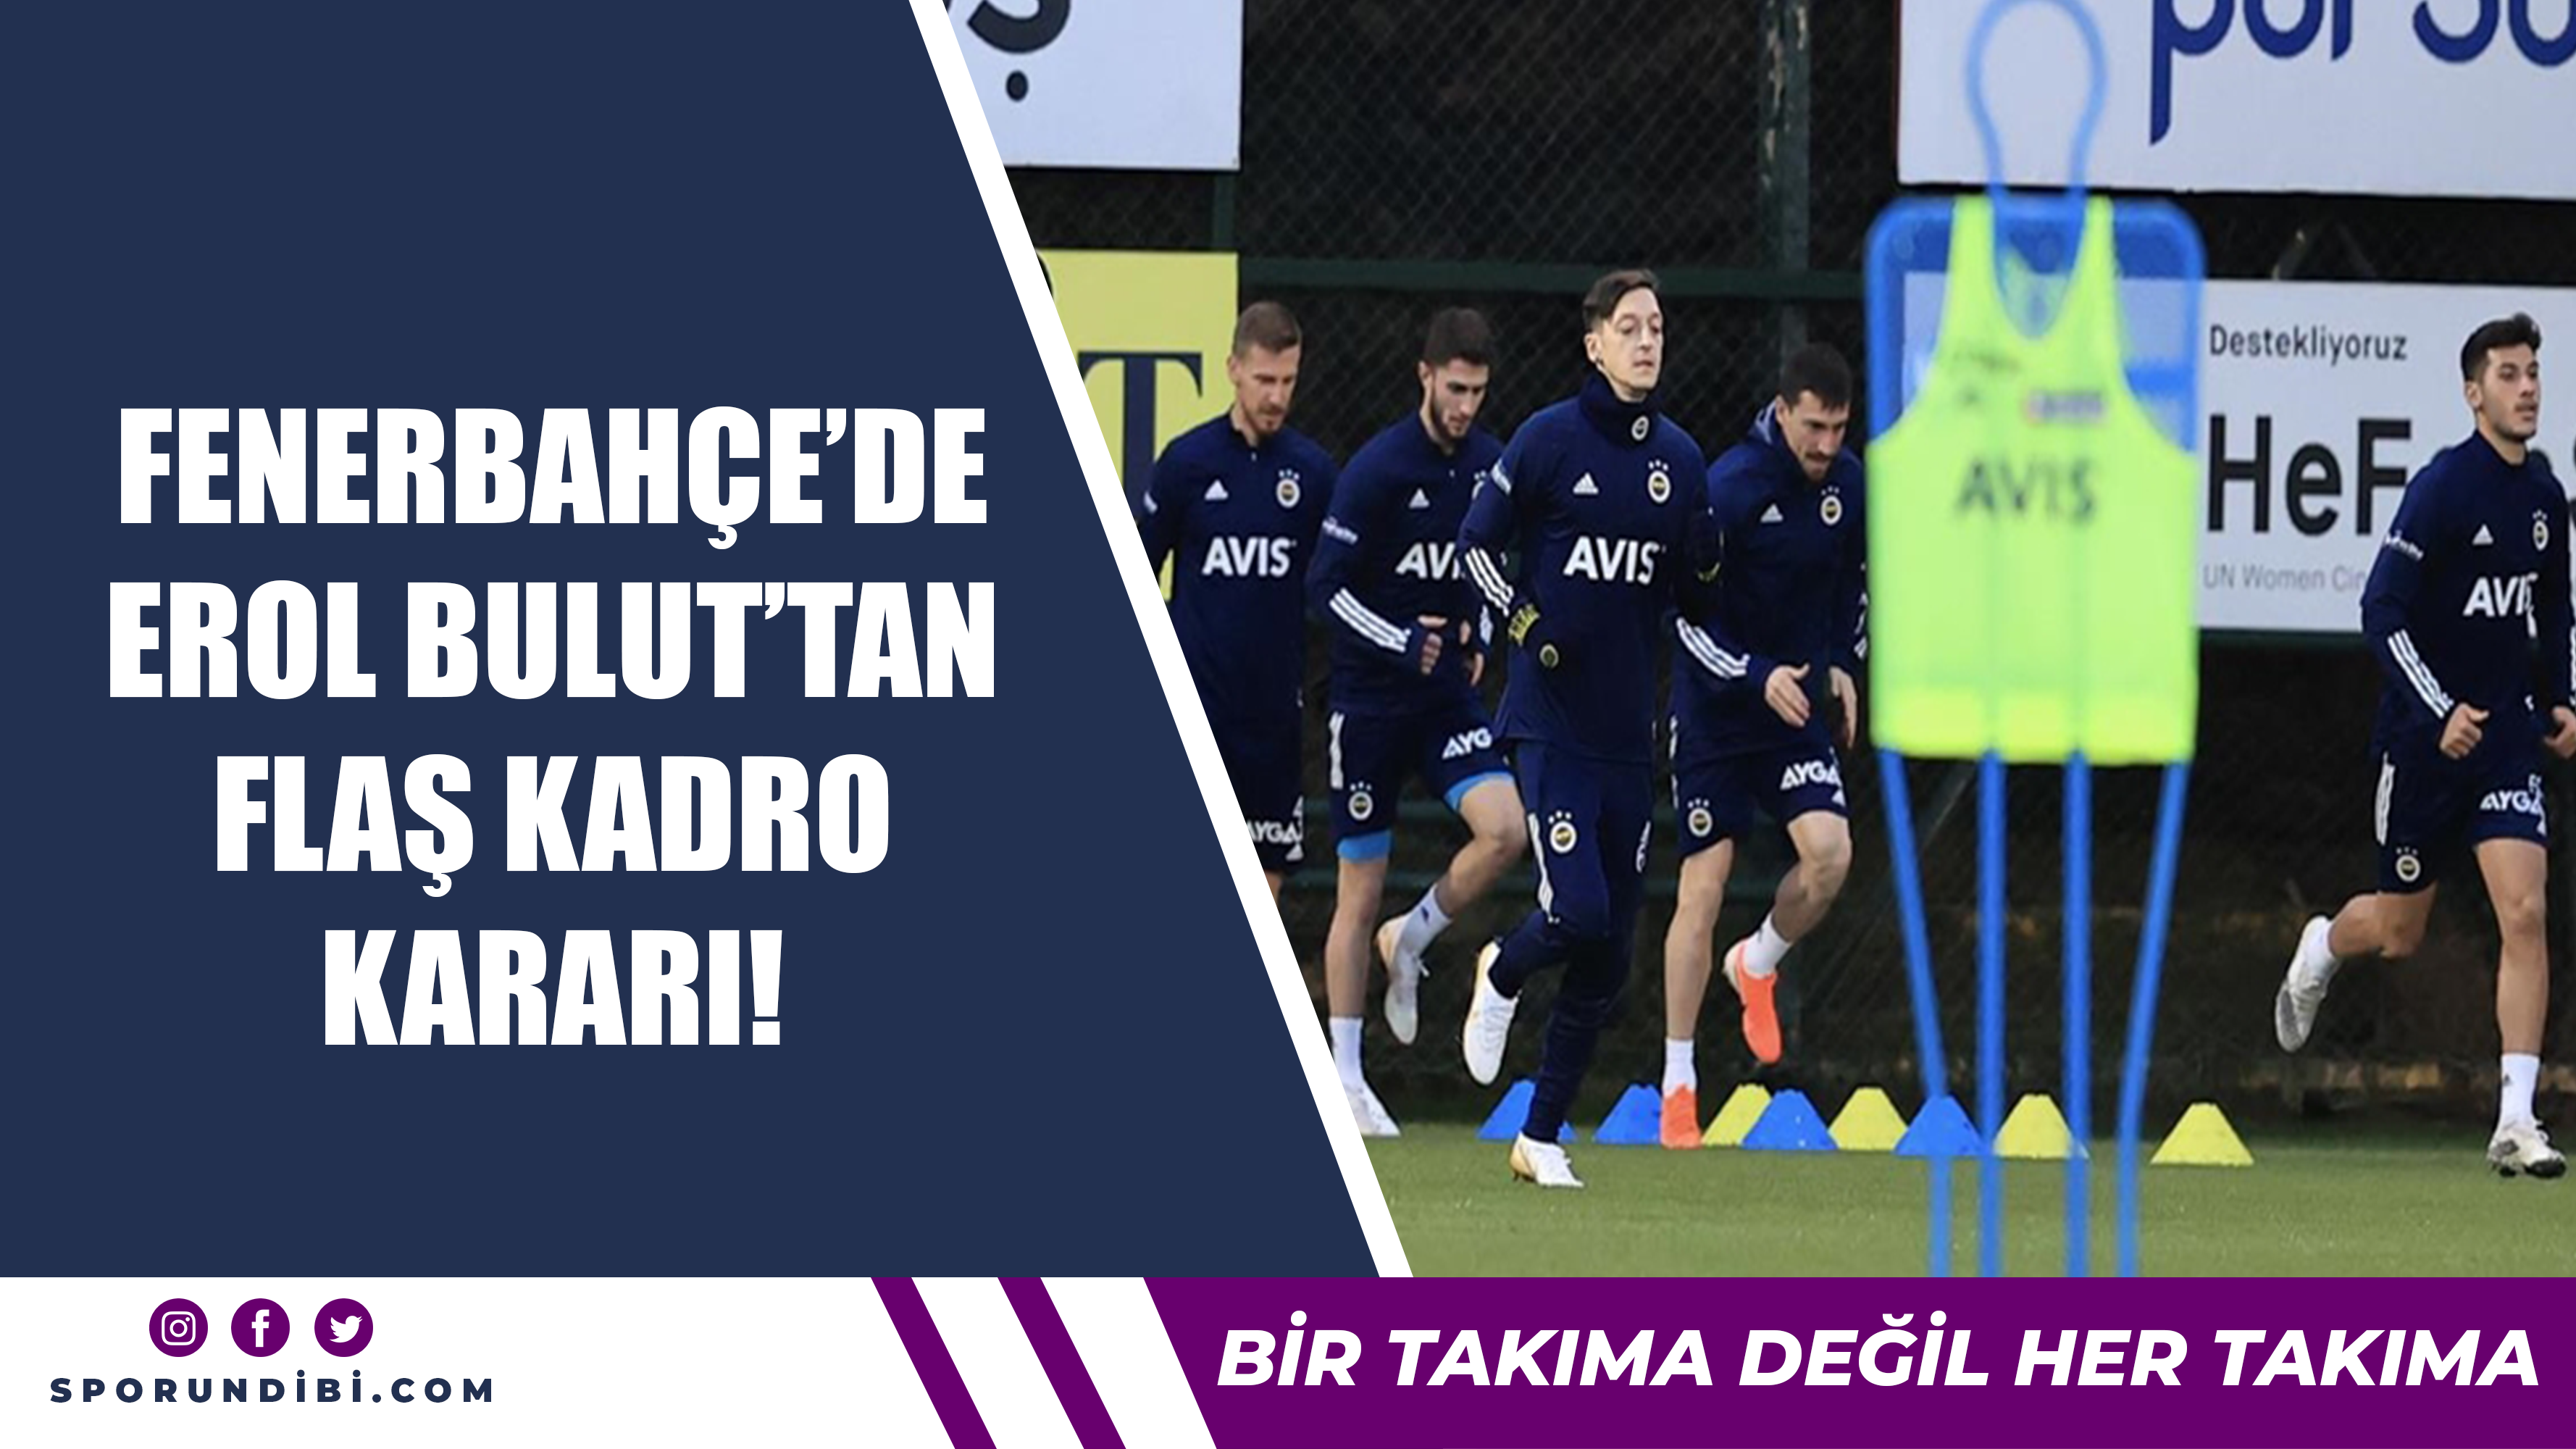 Fenerbahçe'de Erol Bulut'tan flaş kadro kararı!